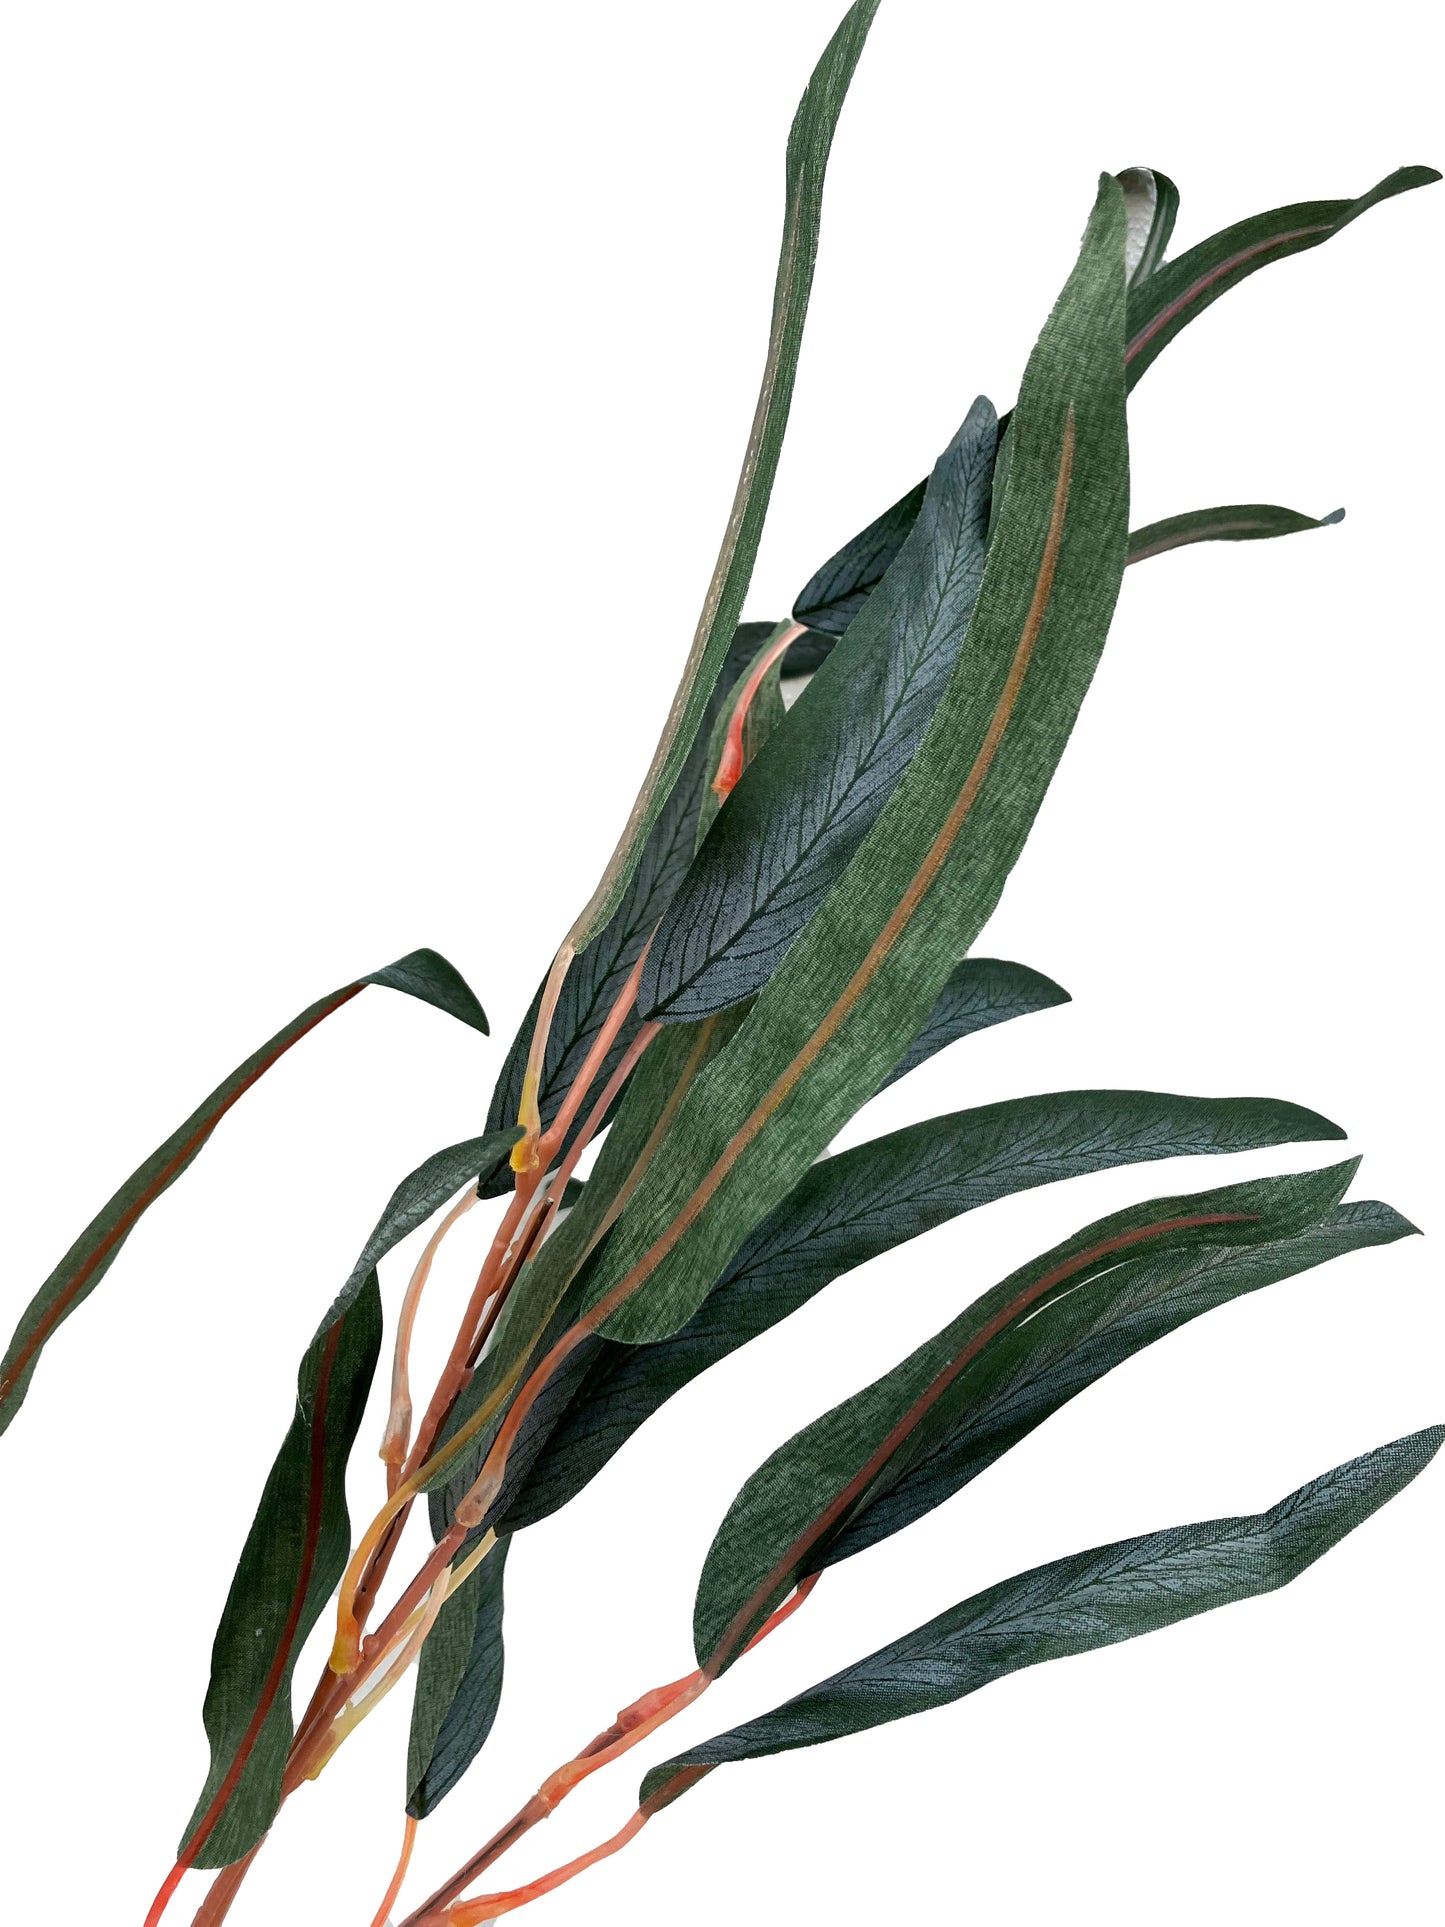 Artificial Eucalyptus Gum Branch